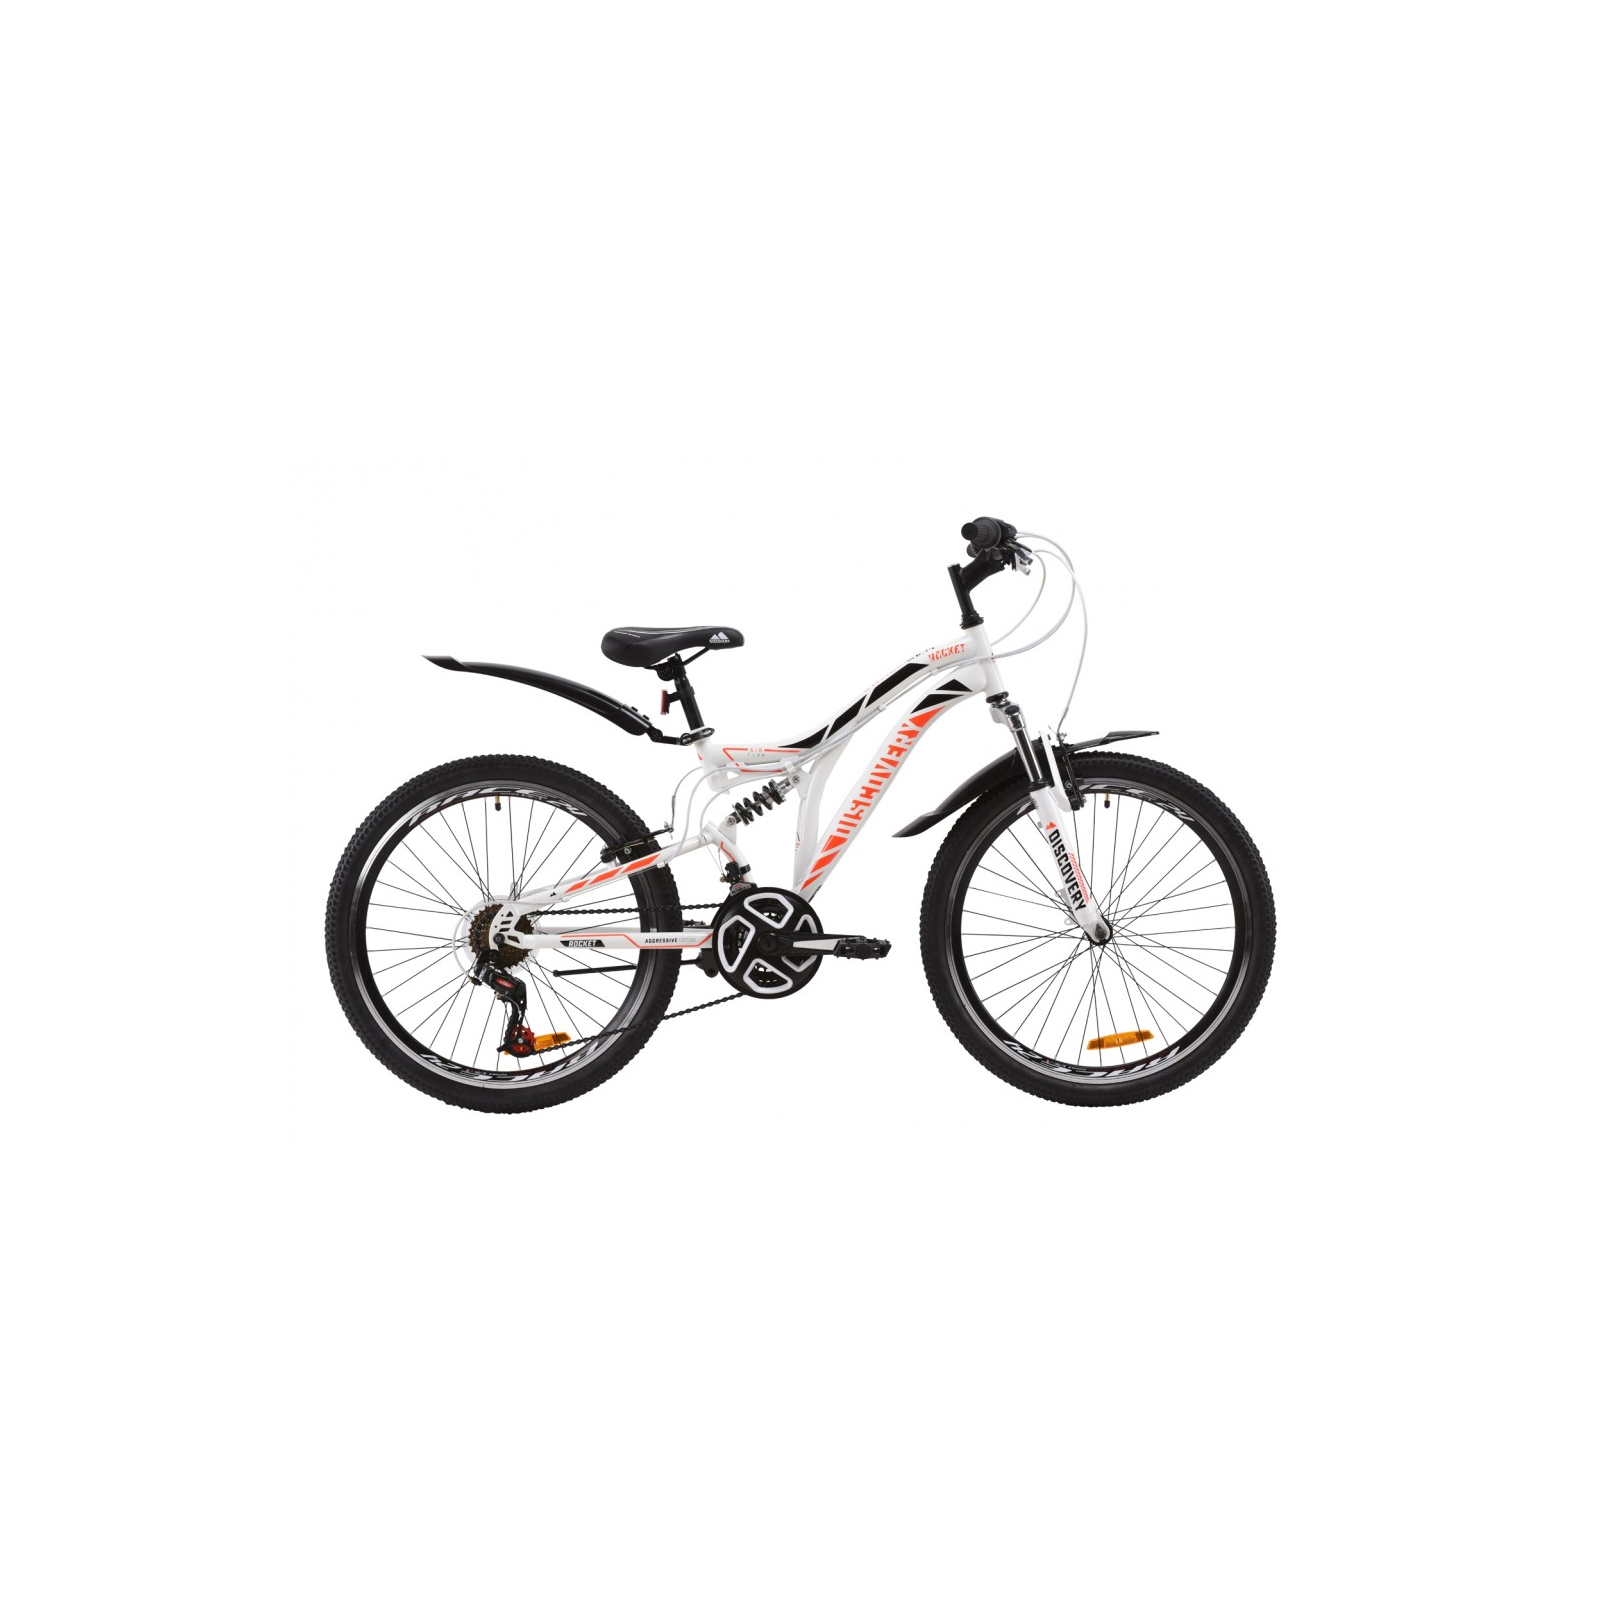 Велосипед Discovery 24" ROCKET AM2 Vbr рама-15" St 2020 бело-оранжевый c черным (OPS-DIS-24-186)